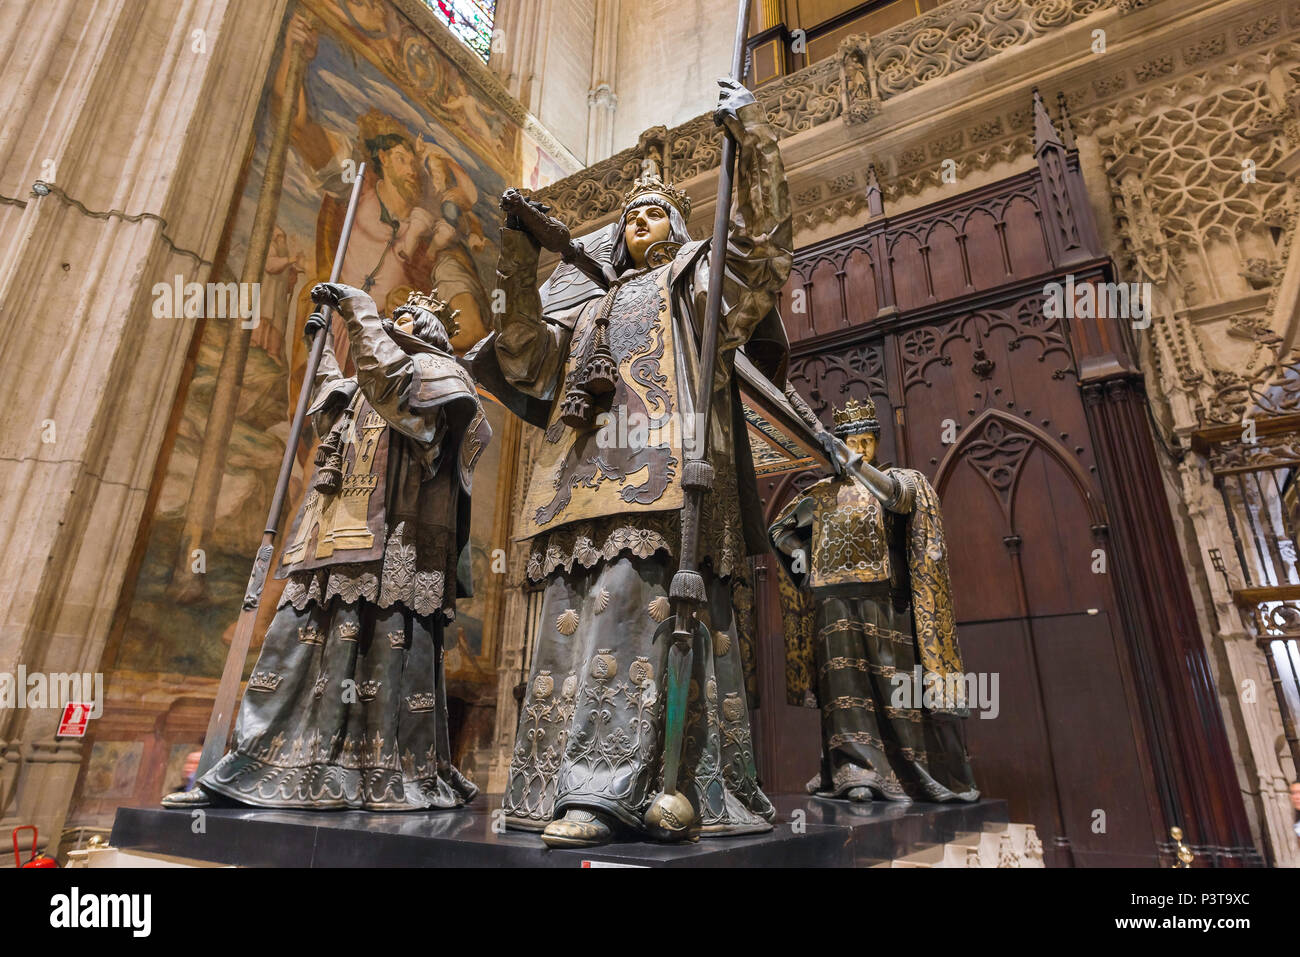 Christophe Colomb, Séville voir des statues situées sur le dessus de la tombe de Christophe Colomb (Cristobal Colon) dans la Cathédrale de Séville (Catedral),Espagne Banque D'Images